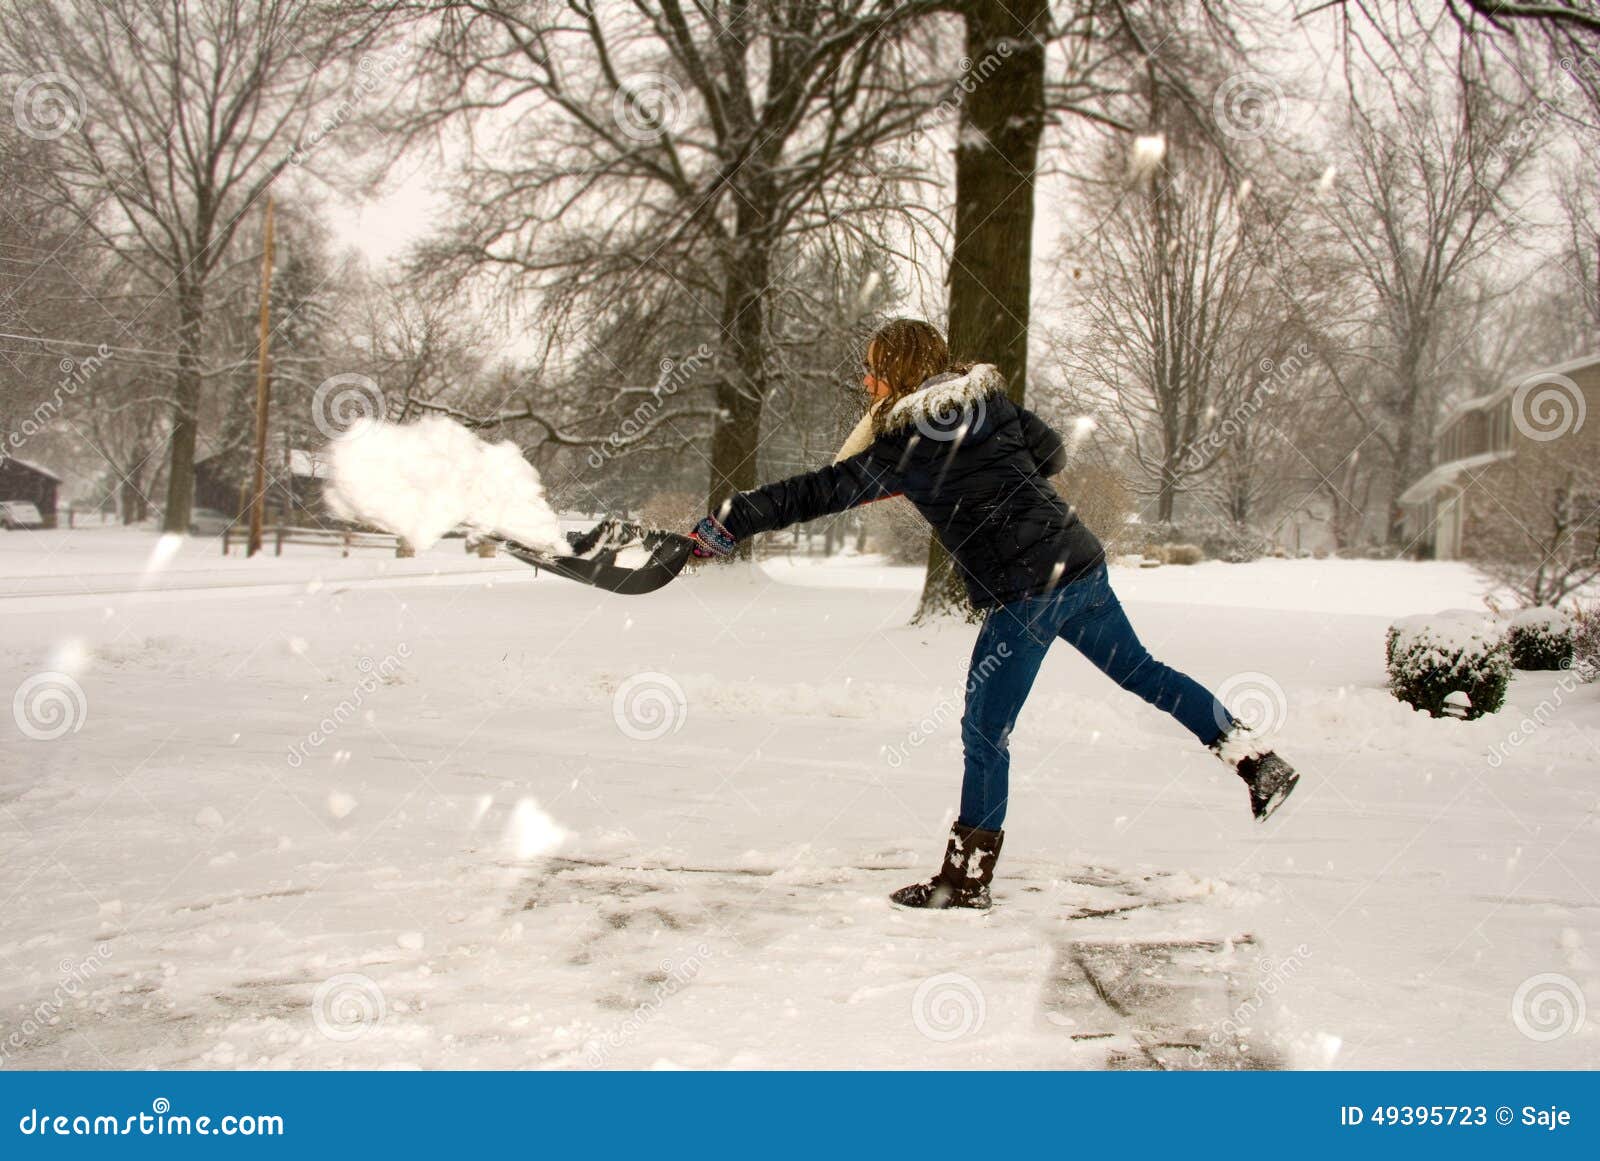 В окно кидают снежки. Кидание Снежка. Девушка бросает снежки. Кидает снег. Бросание снежков.